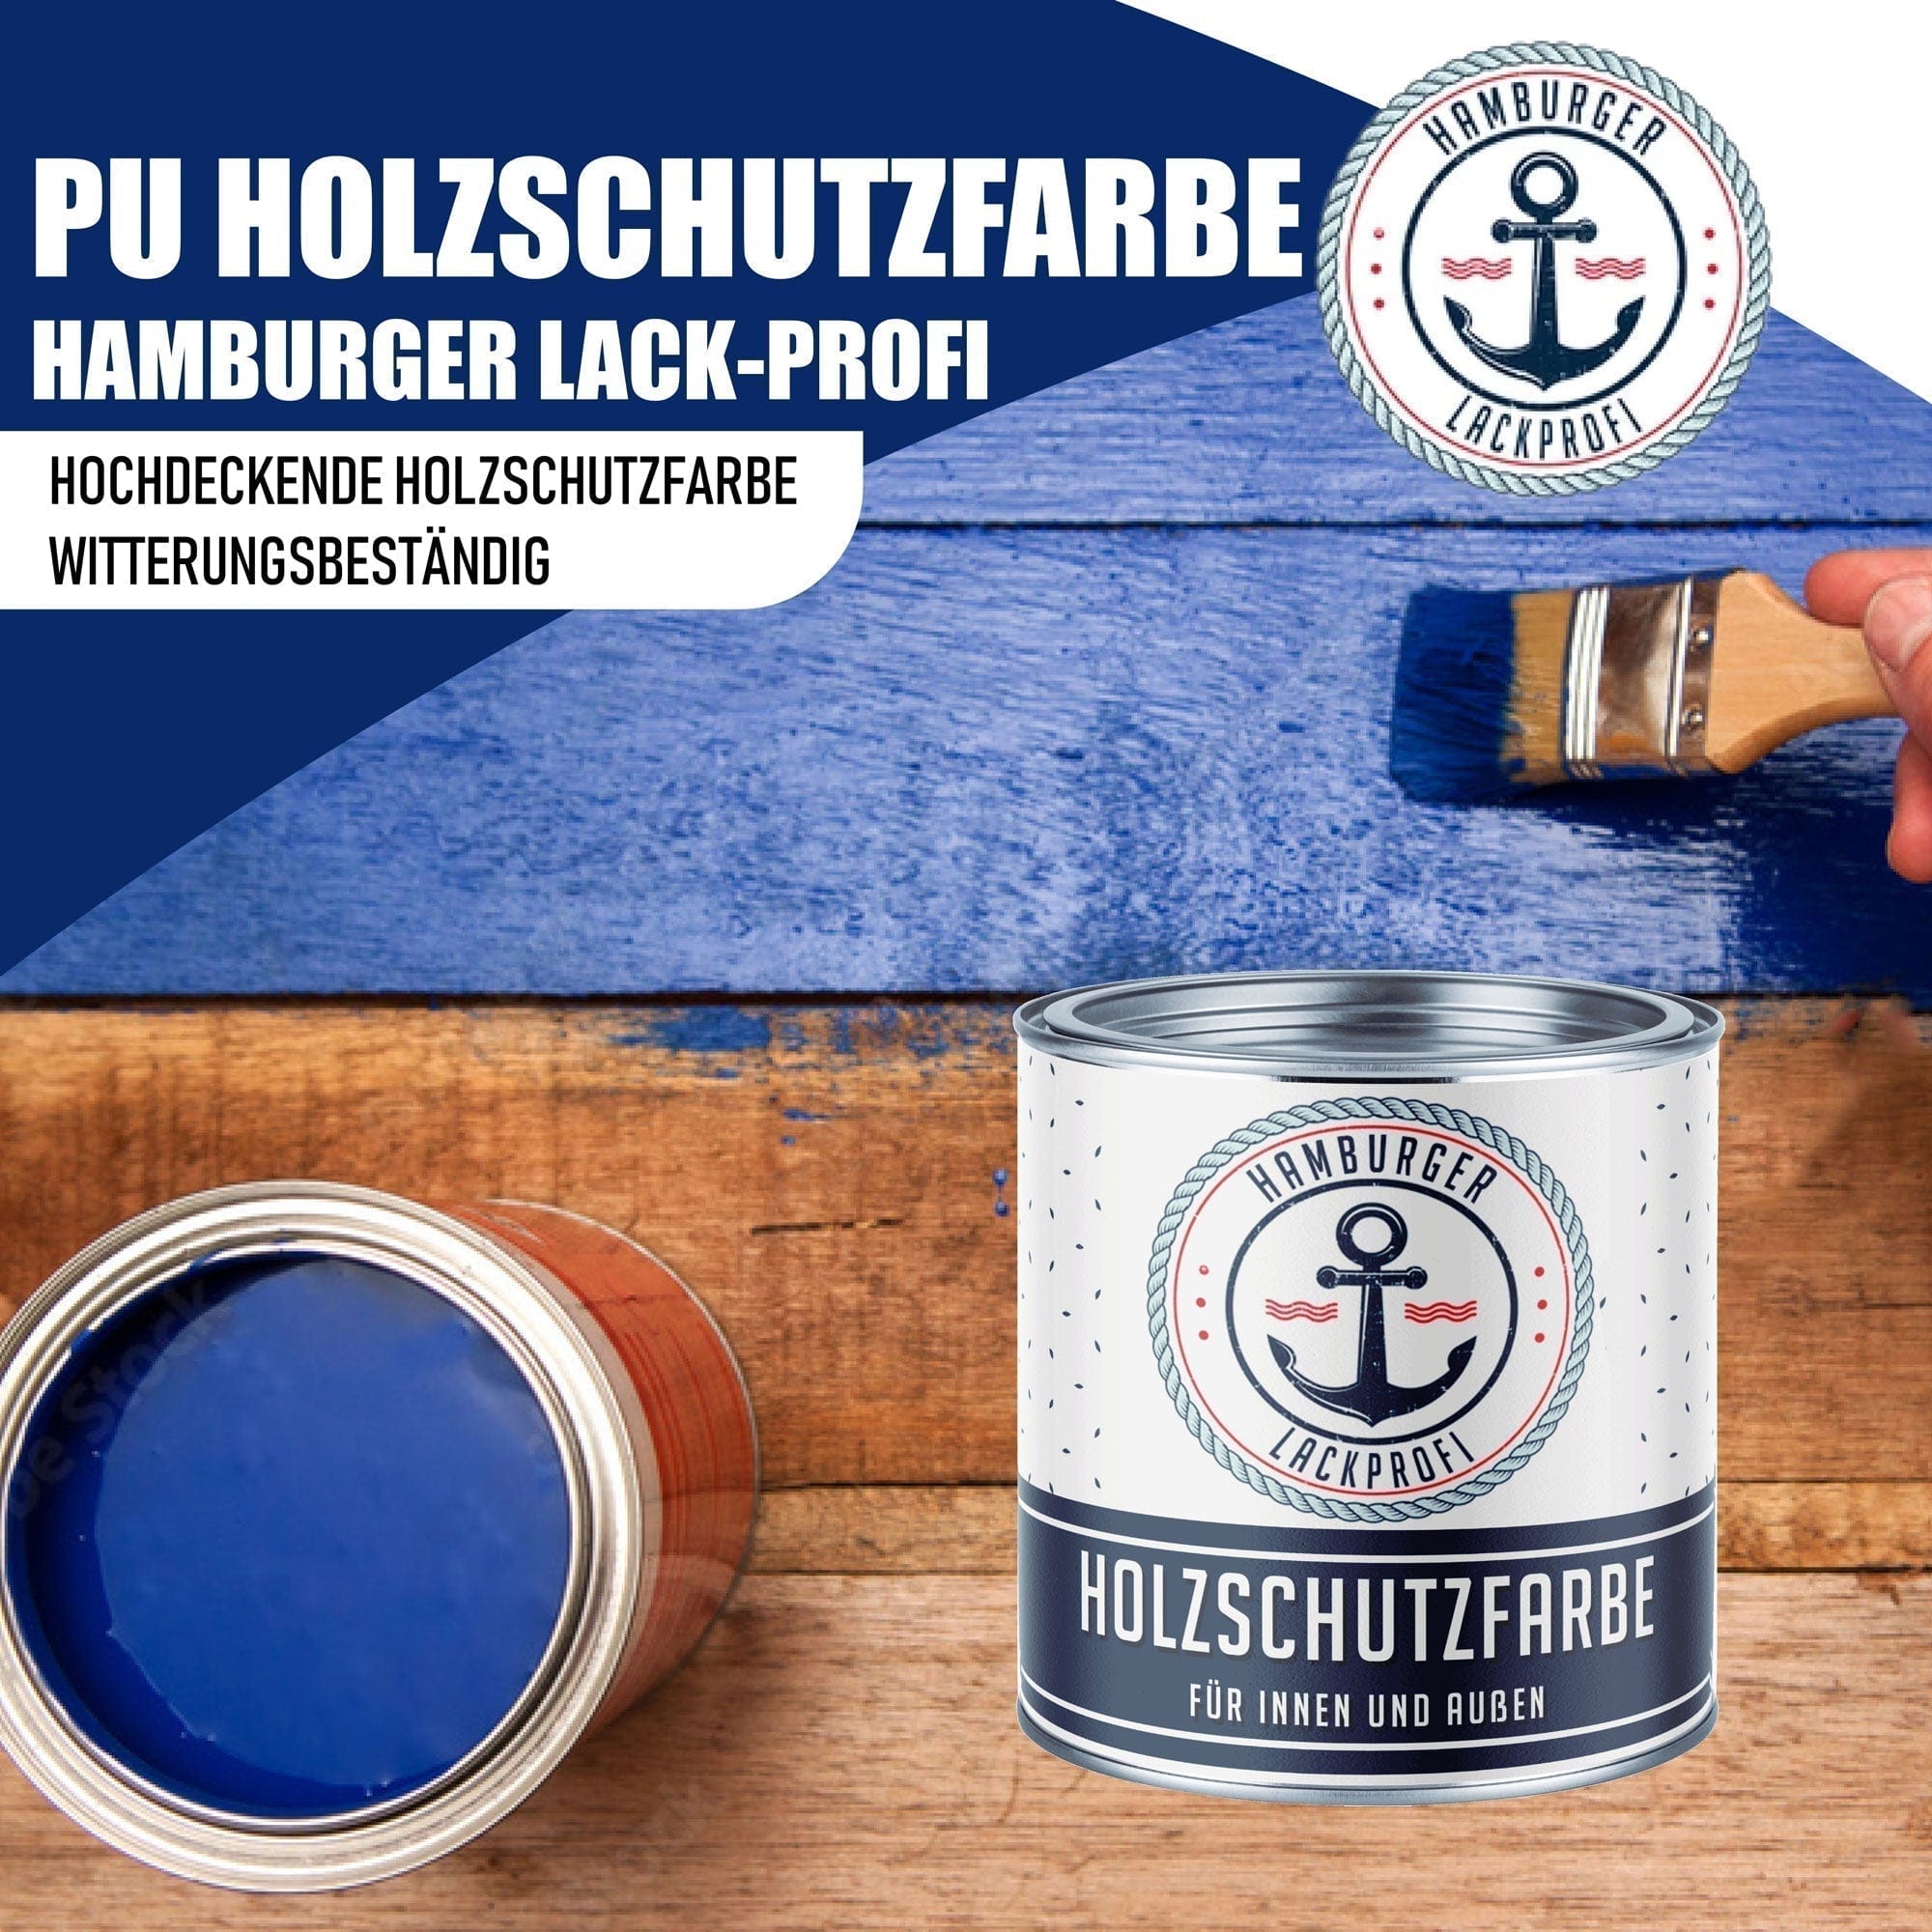 Hamburger Lack-Profi Lacke & Beschichtungen PU Holzschutzfarbe RAL 6004 Blaugrün - Wetterschutzfarbe